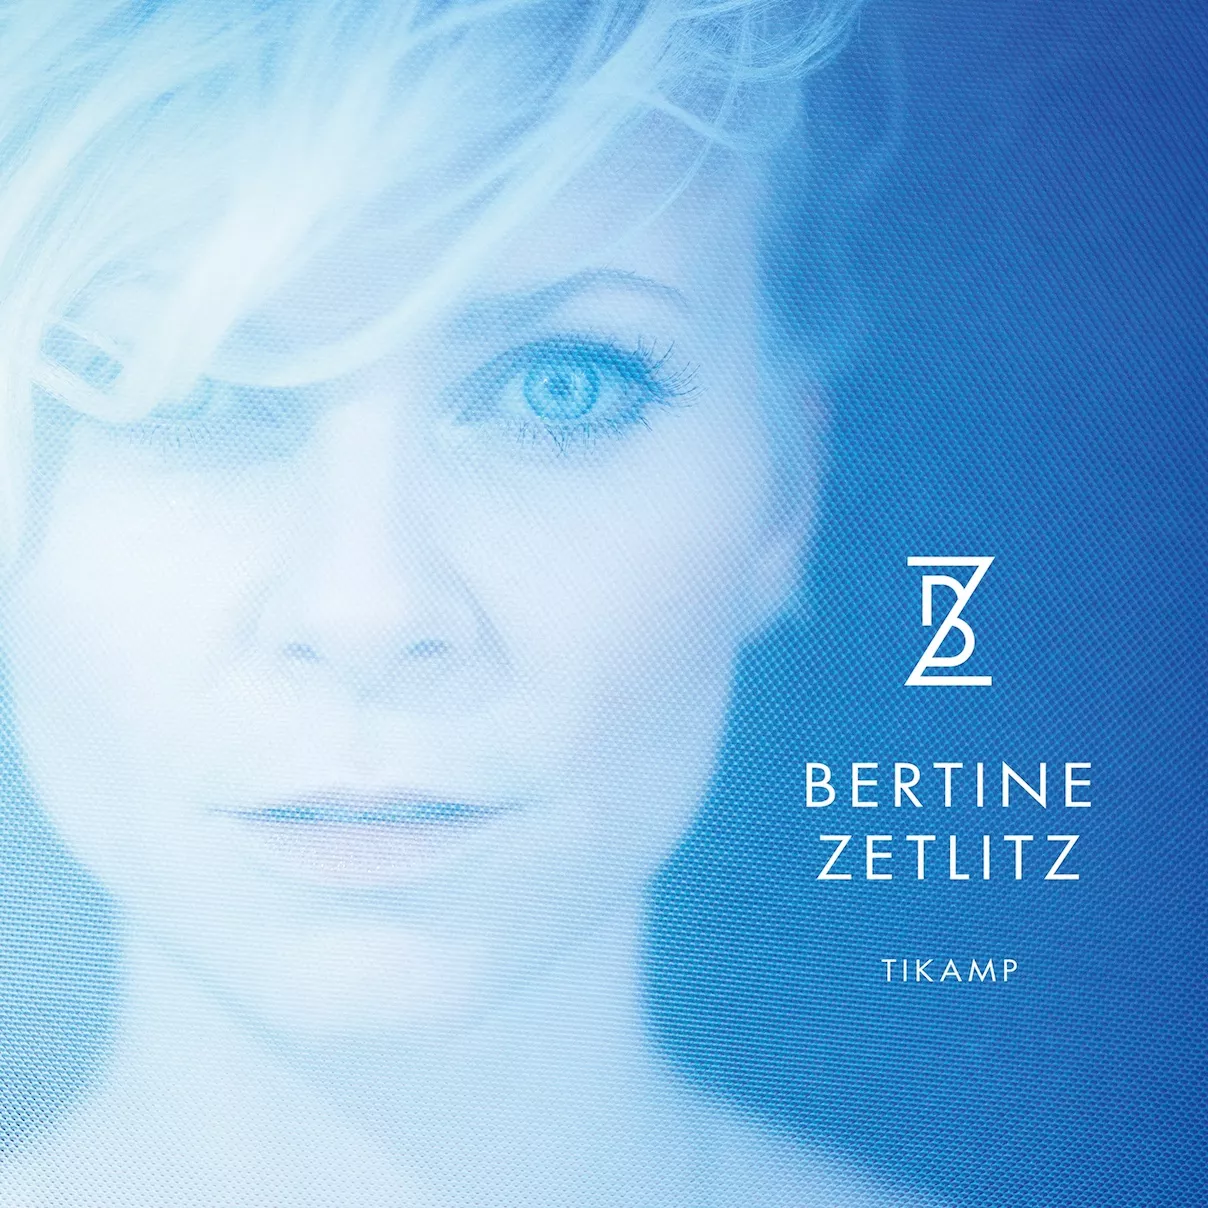 Tikamp - Bertine Zetlitz